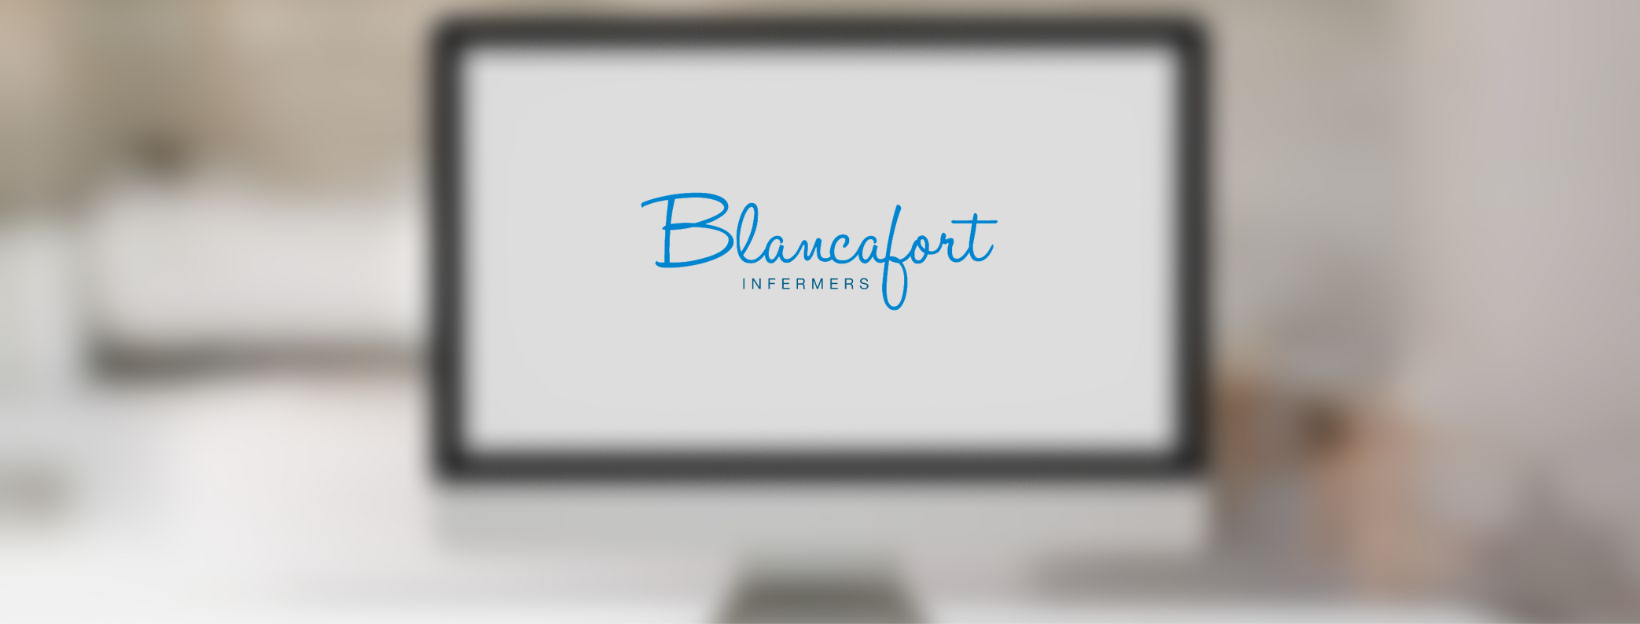 Página web para Blancafort Infermers